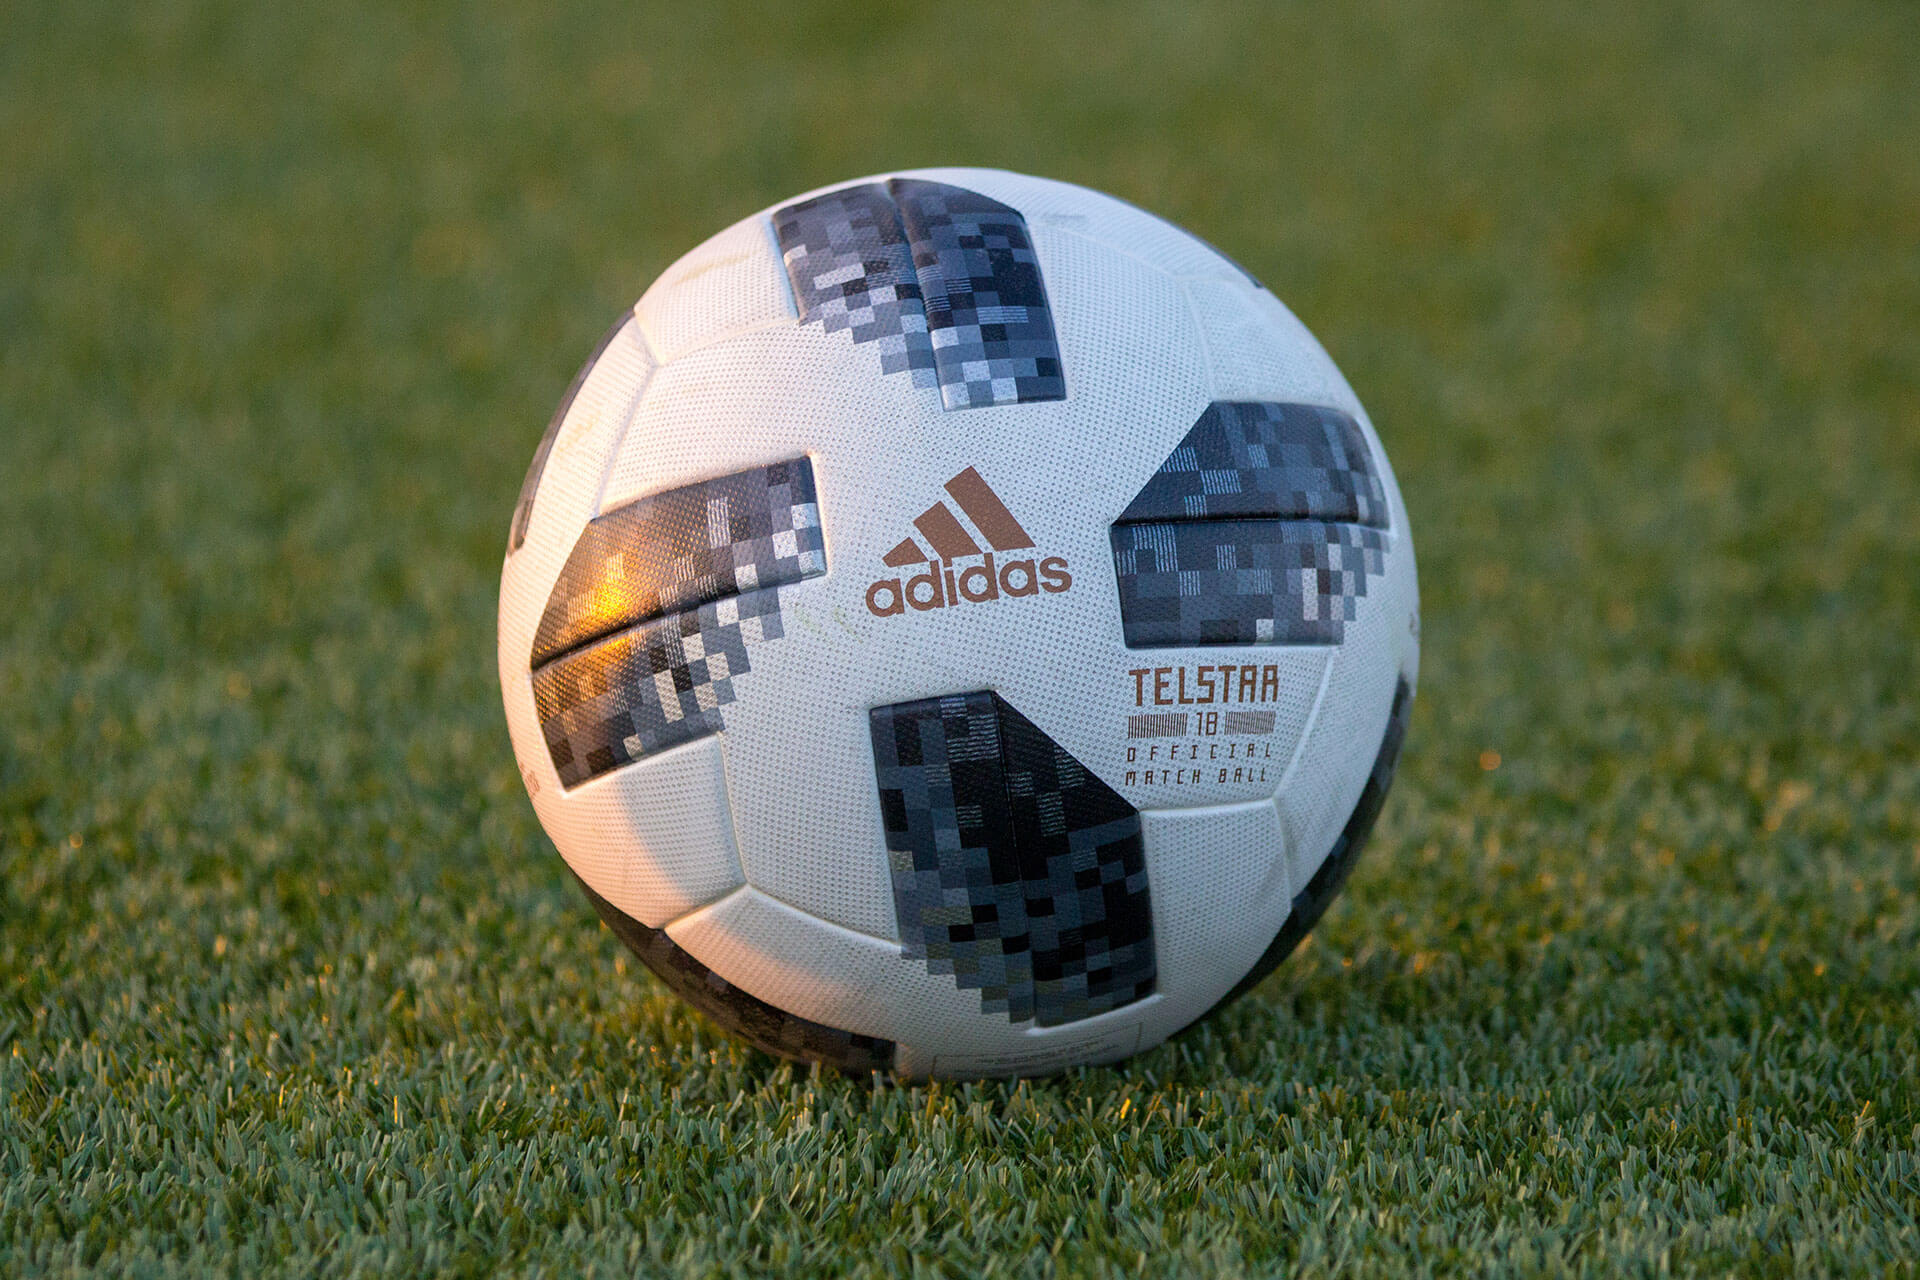 Adidas Telstar 18 Official Match Ball